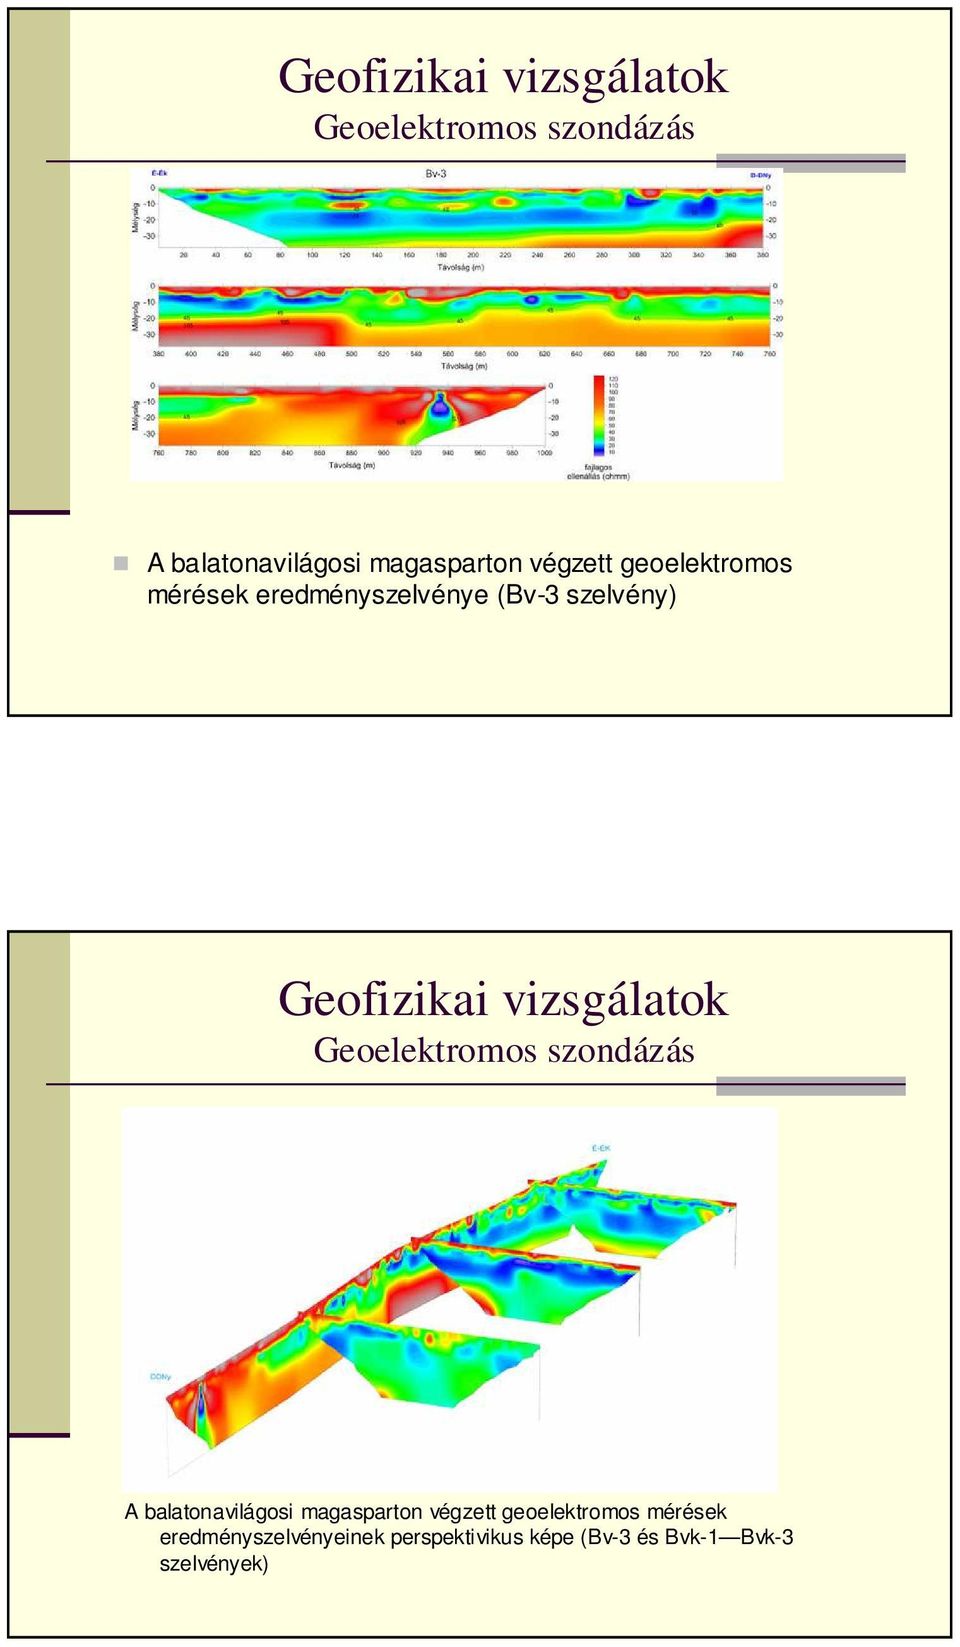 geoelektromos mérések eredményszelvényeinek perspektivikus képe (Bv-3 és Bvk-1